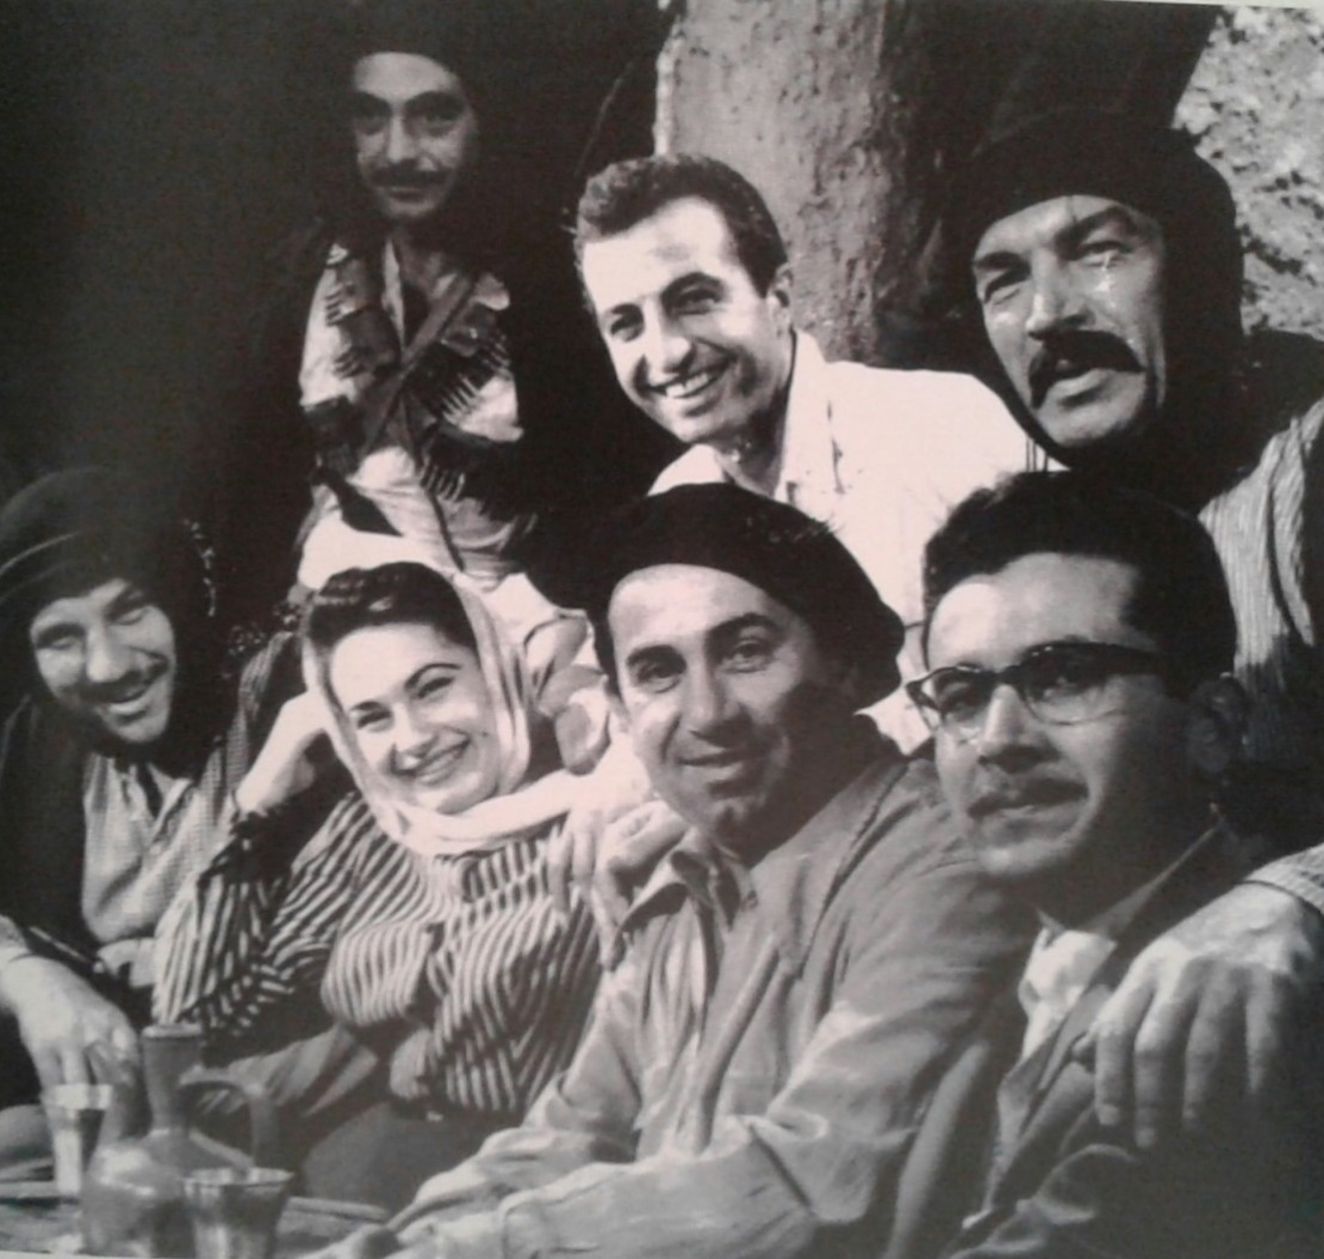  Enver Burçkin (Kepli olan kişi), Belgin Doruk, Atıf Kaptan, Turan Seyfioglu, Baki Tamer ve Ahmet Tarık Tekçe 